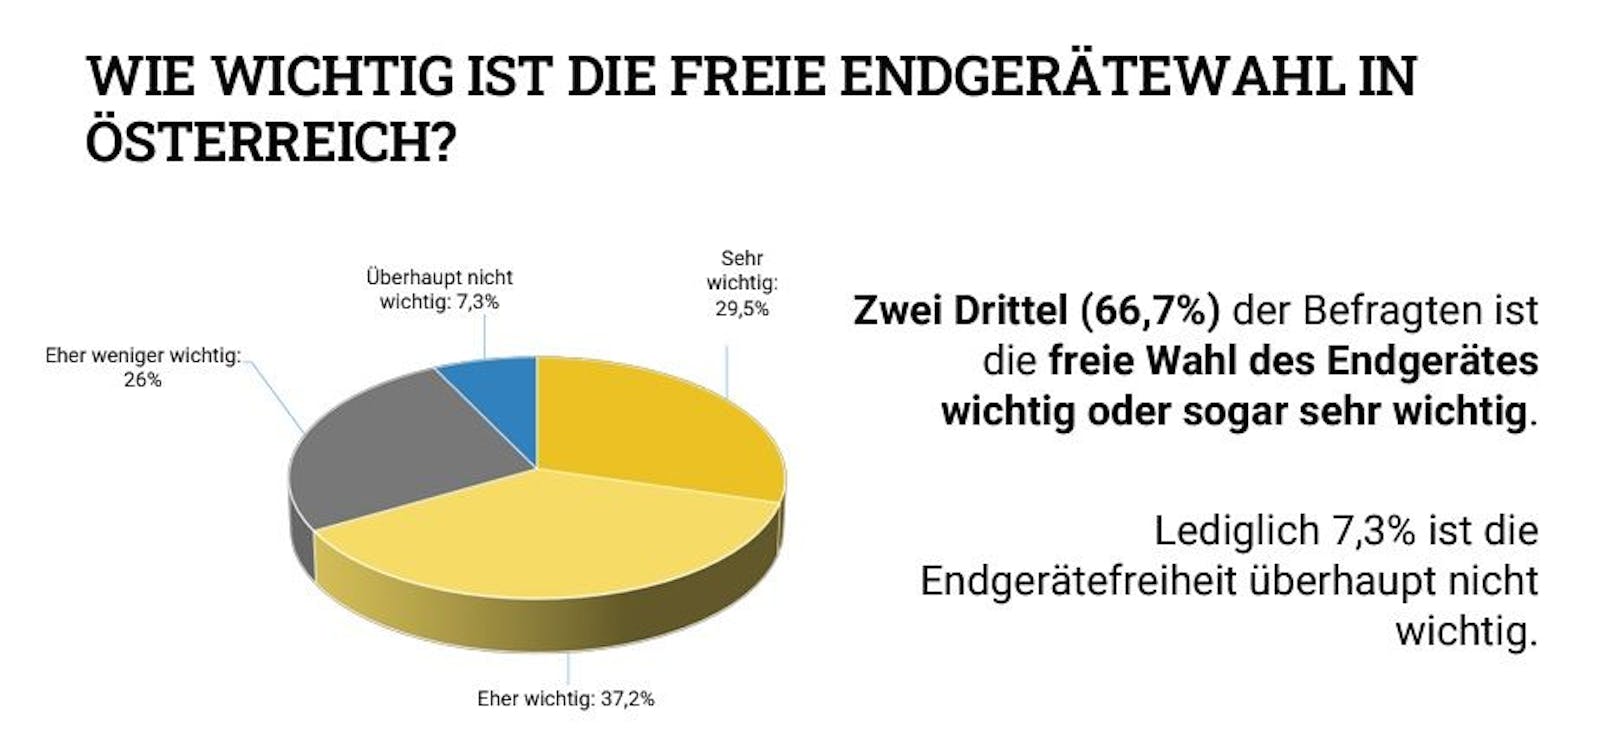 Neue Umfrage zur Internetnutzung und Wahlfreiheit in Österreich.